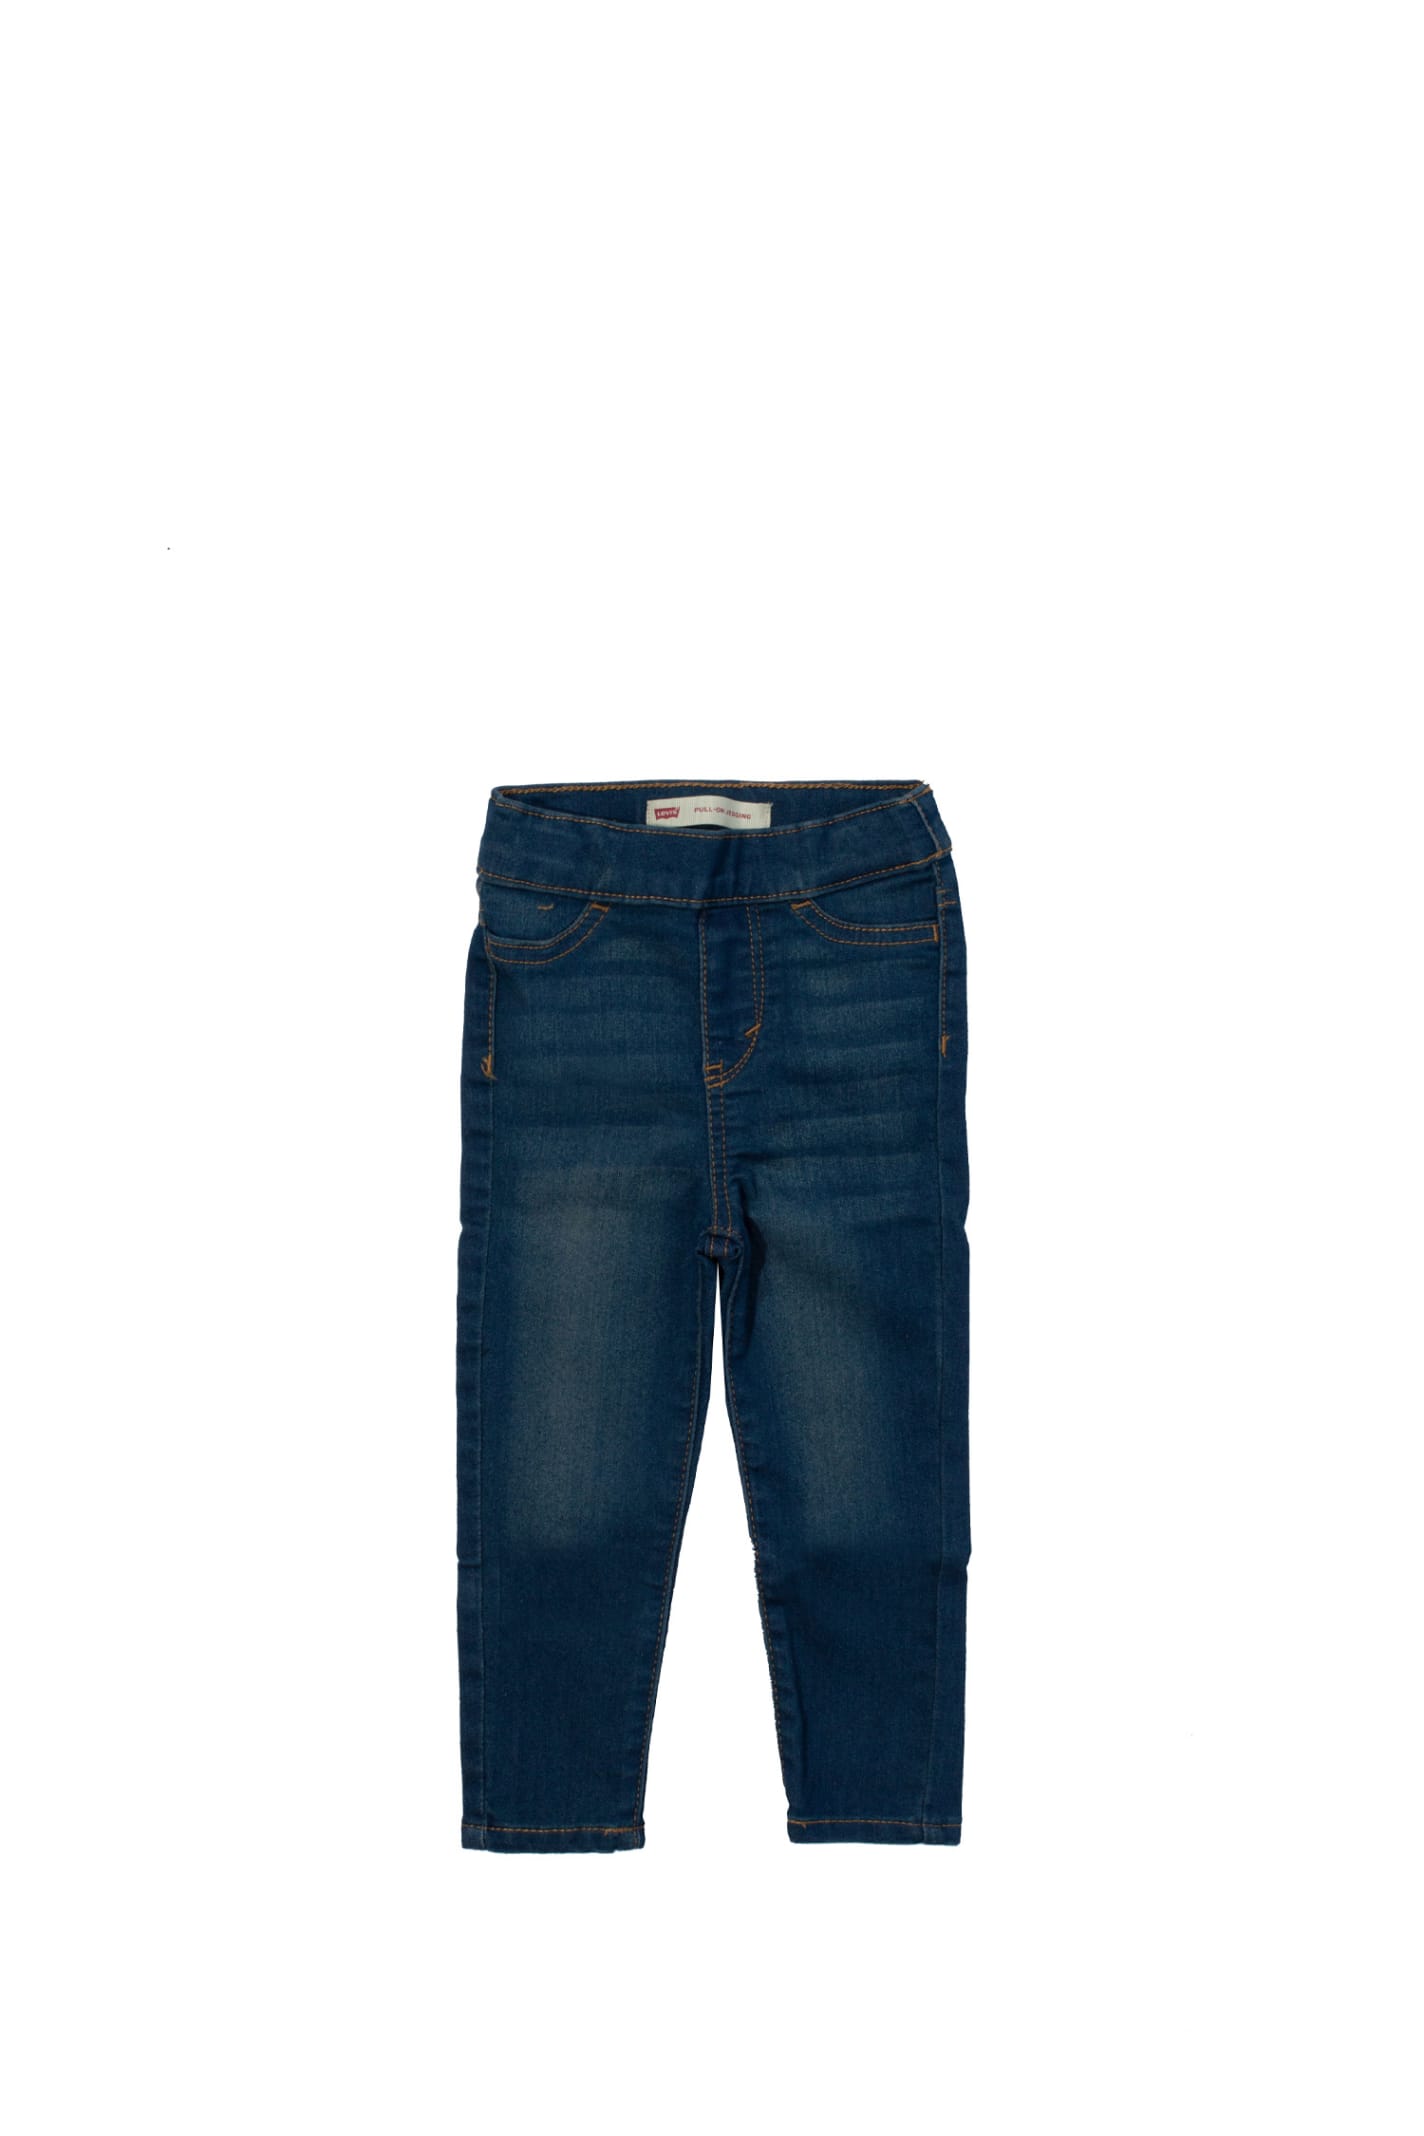 Levi's Cotton Jeans